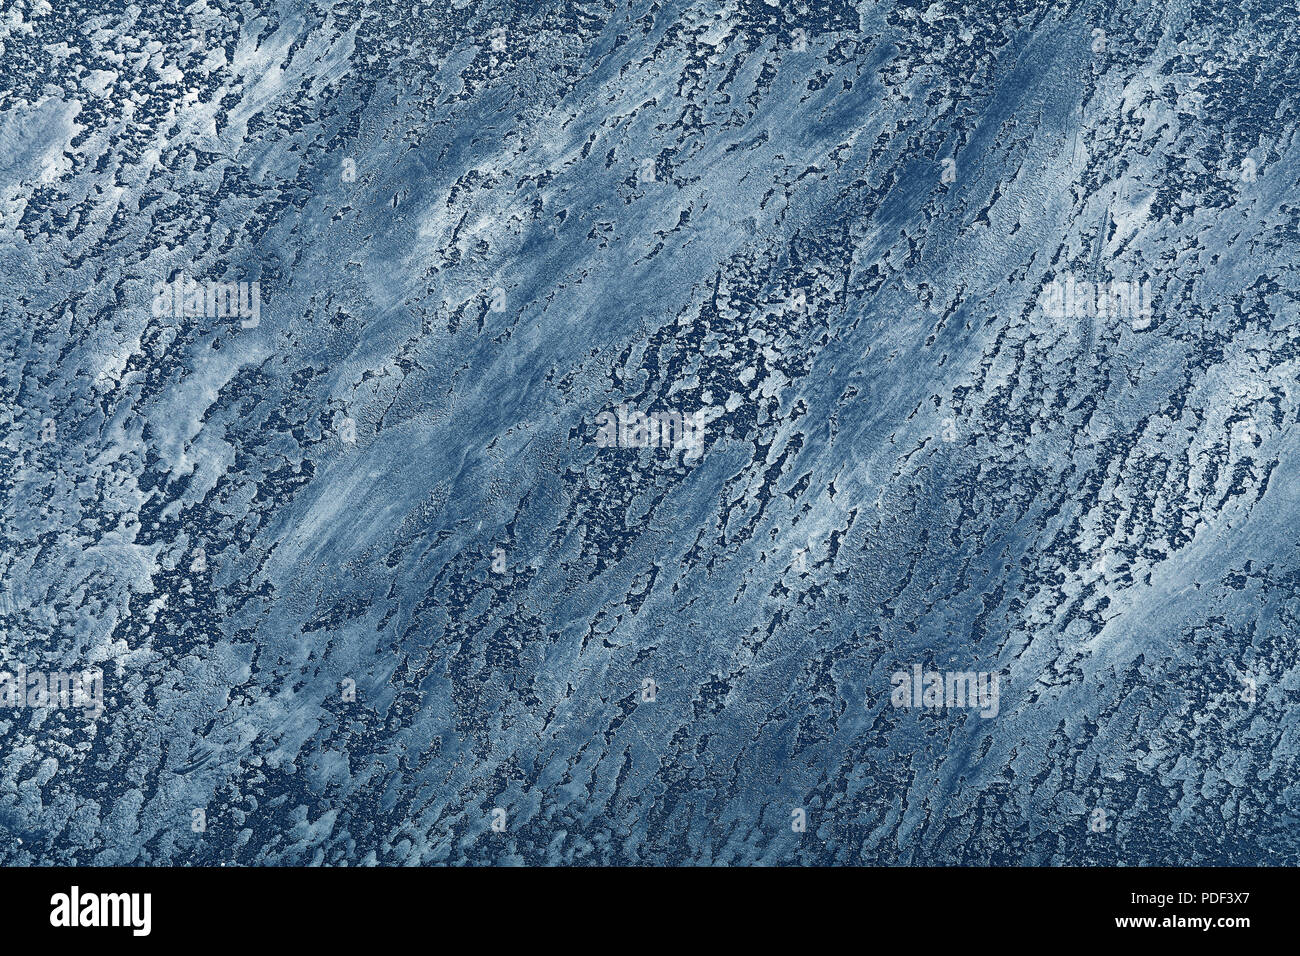 Grunge blue desigual ancianidad daub pared de yeso textura del fondo con manchas y trazos de pintura, cerrar Foto de stock